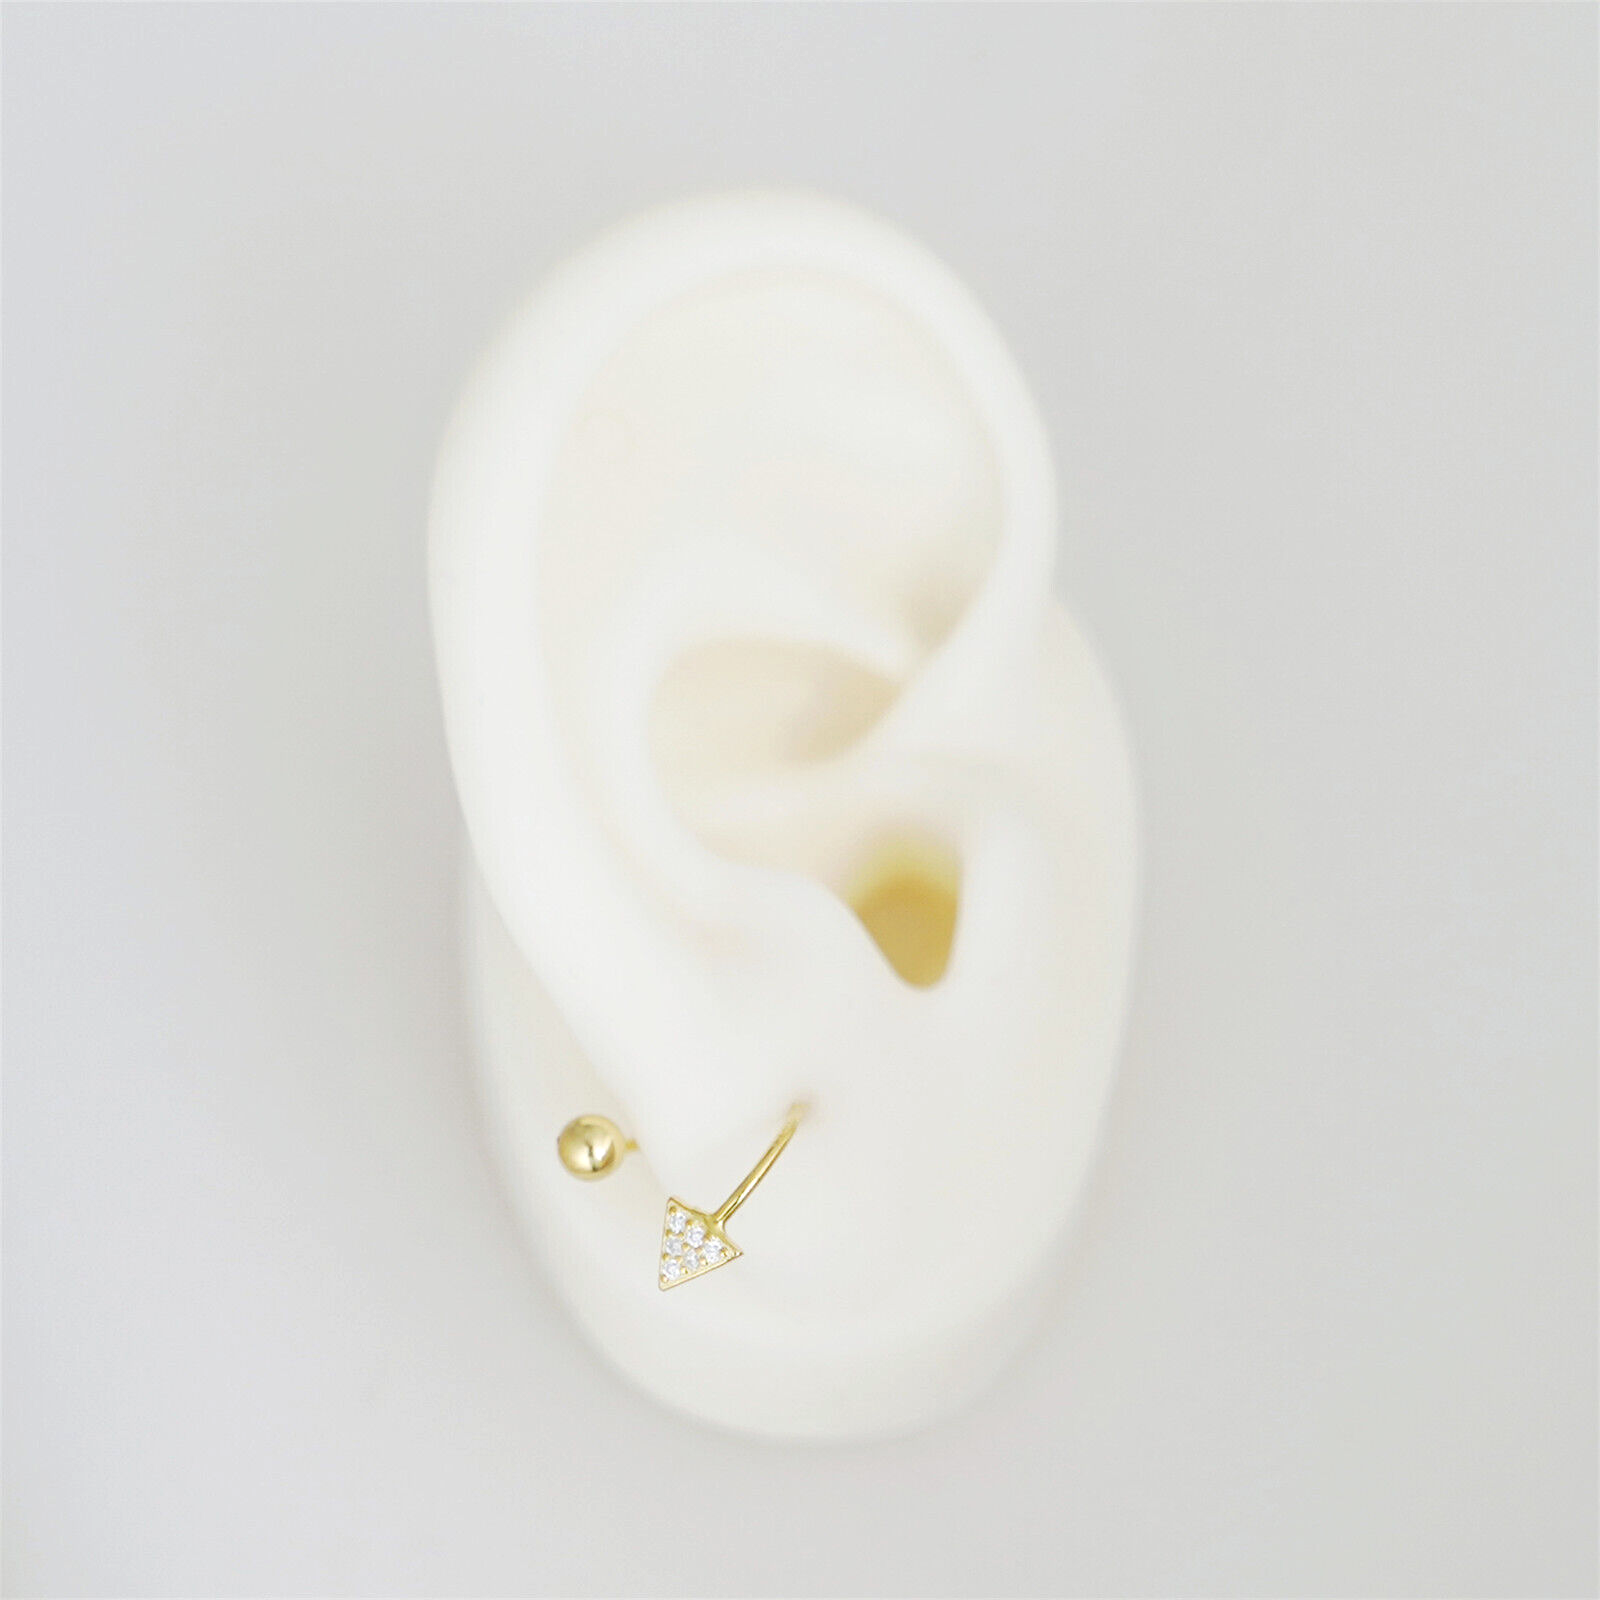 CZ Arrow Stud Earrings | Twirl Wire Huggie Screw Back Beads Earrings in 18K Gold on Sterling Silver - sugarkittenlondon